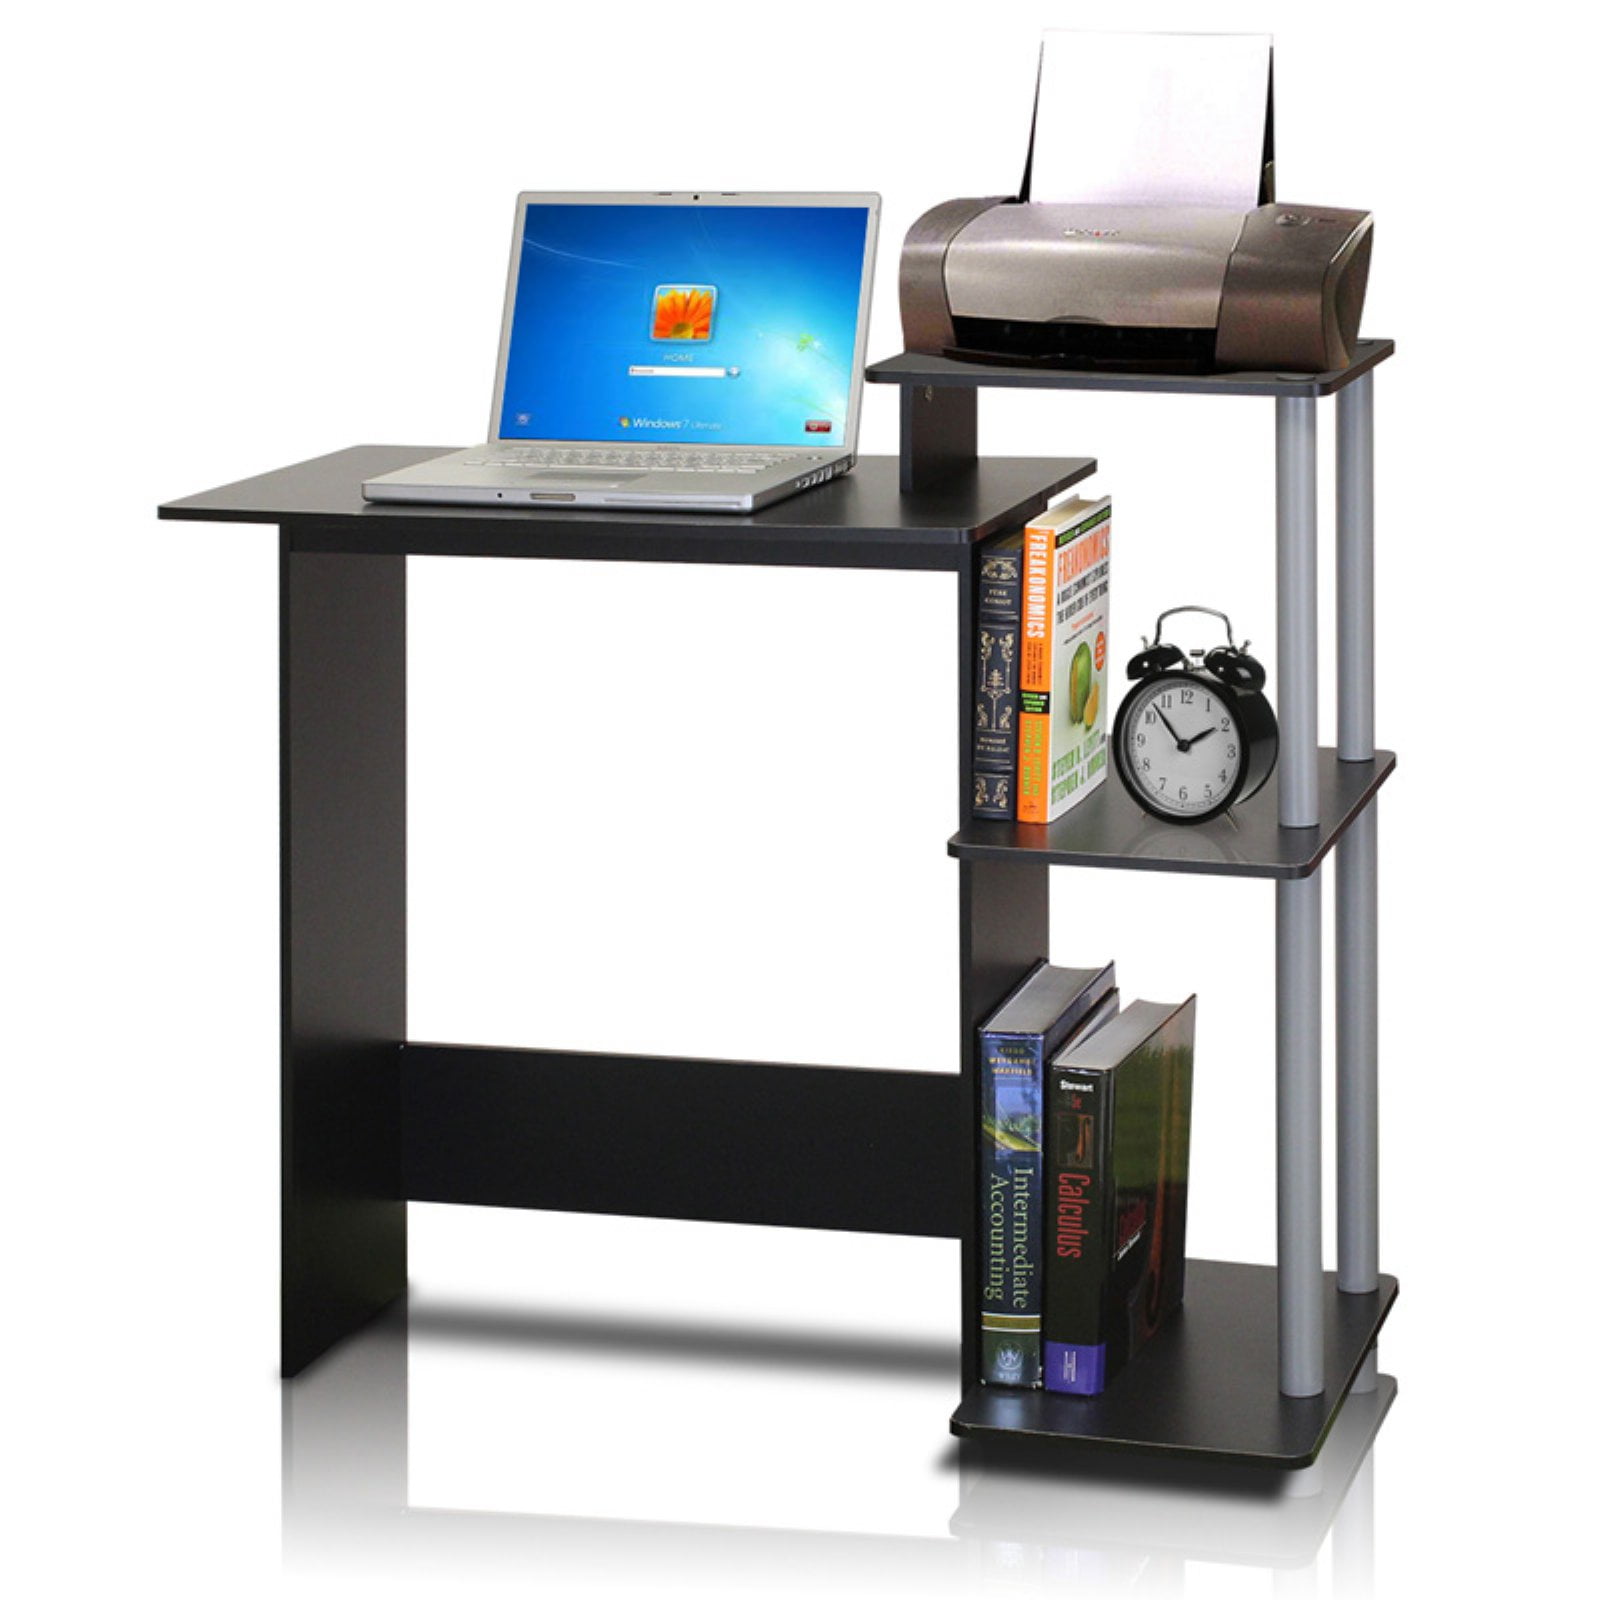 PanaCasa 112 * 50 * 76cm Mesa para Ordenador PC Portátil Monitor con Estantes Dejar Libros Documentos Negro 